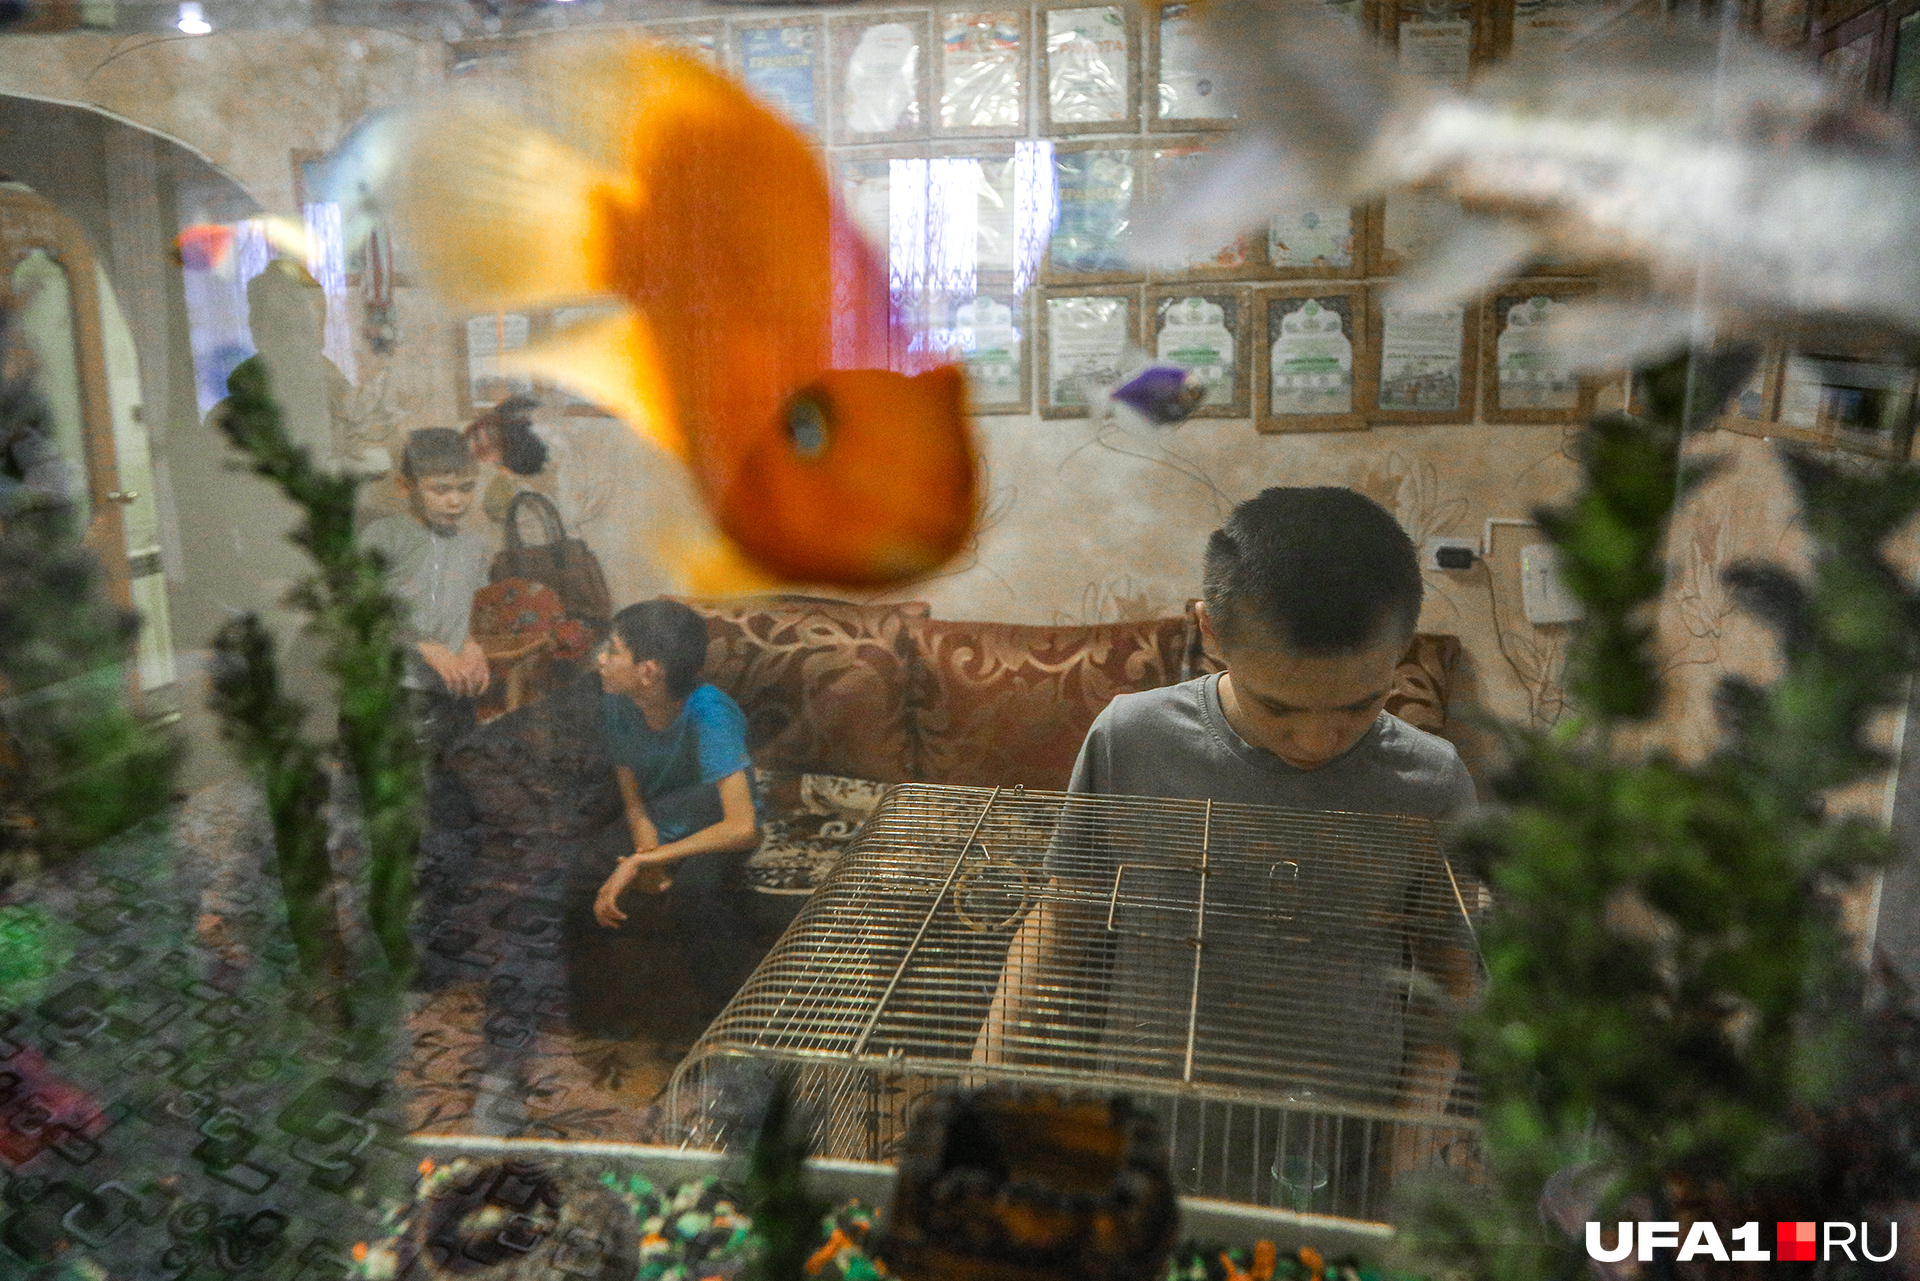 Золотых рыбок и огромный аквариум дети упросили купить на свои призовые